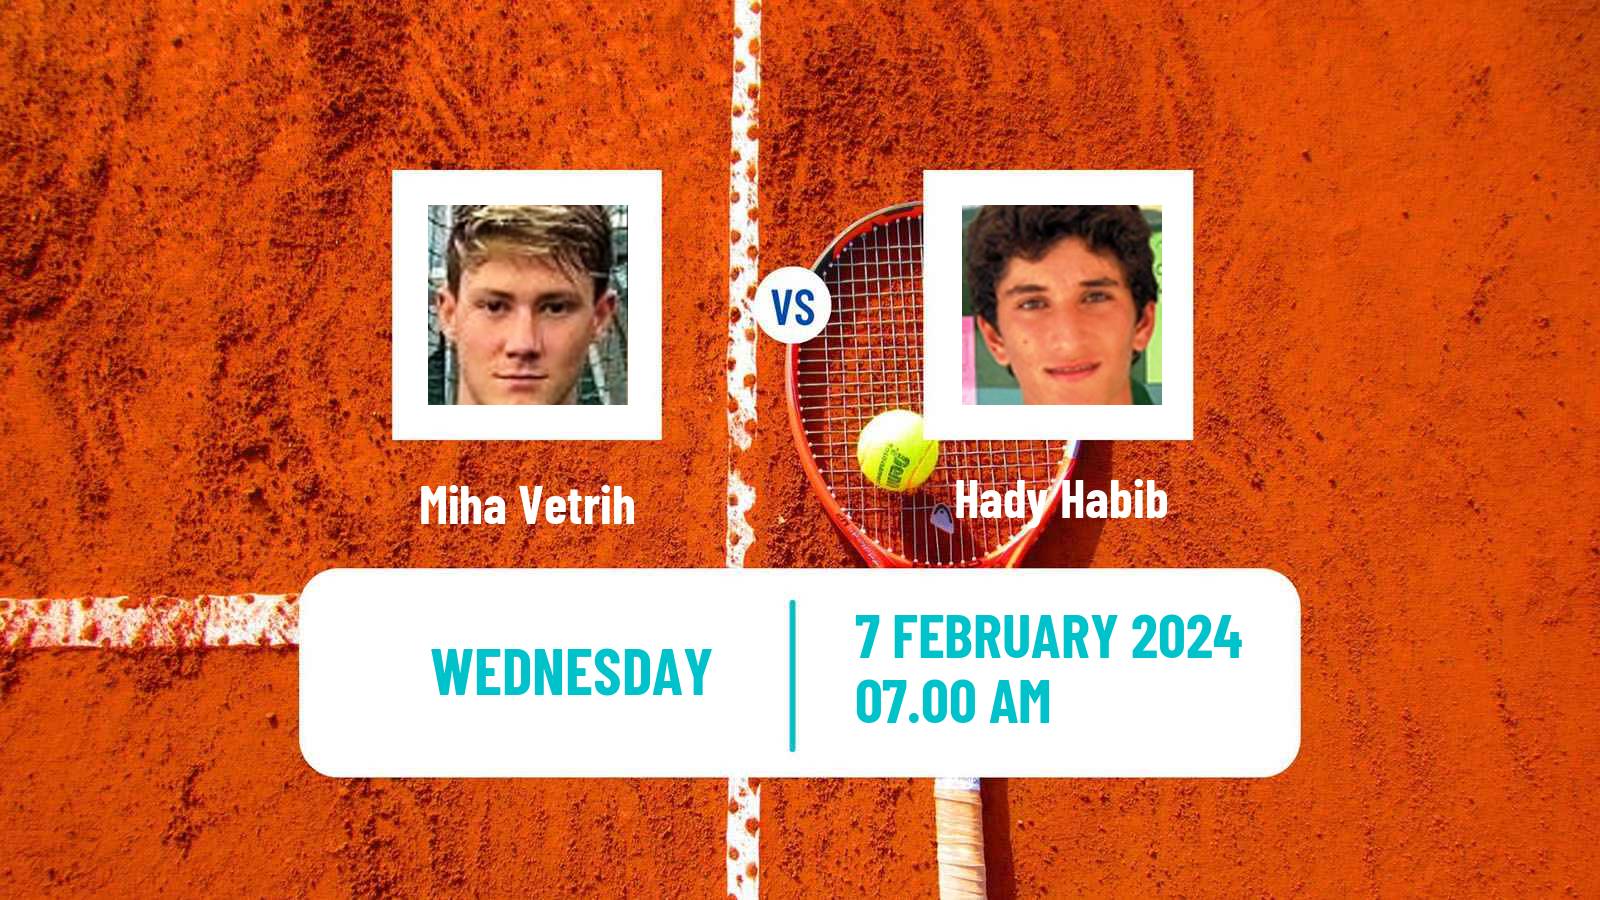 Tennis ITF M25 Antalya 2 Men Miha Vetrih - Hady Habib